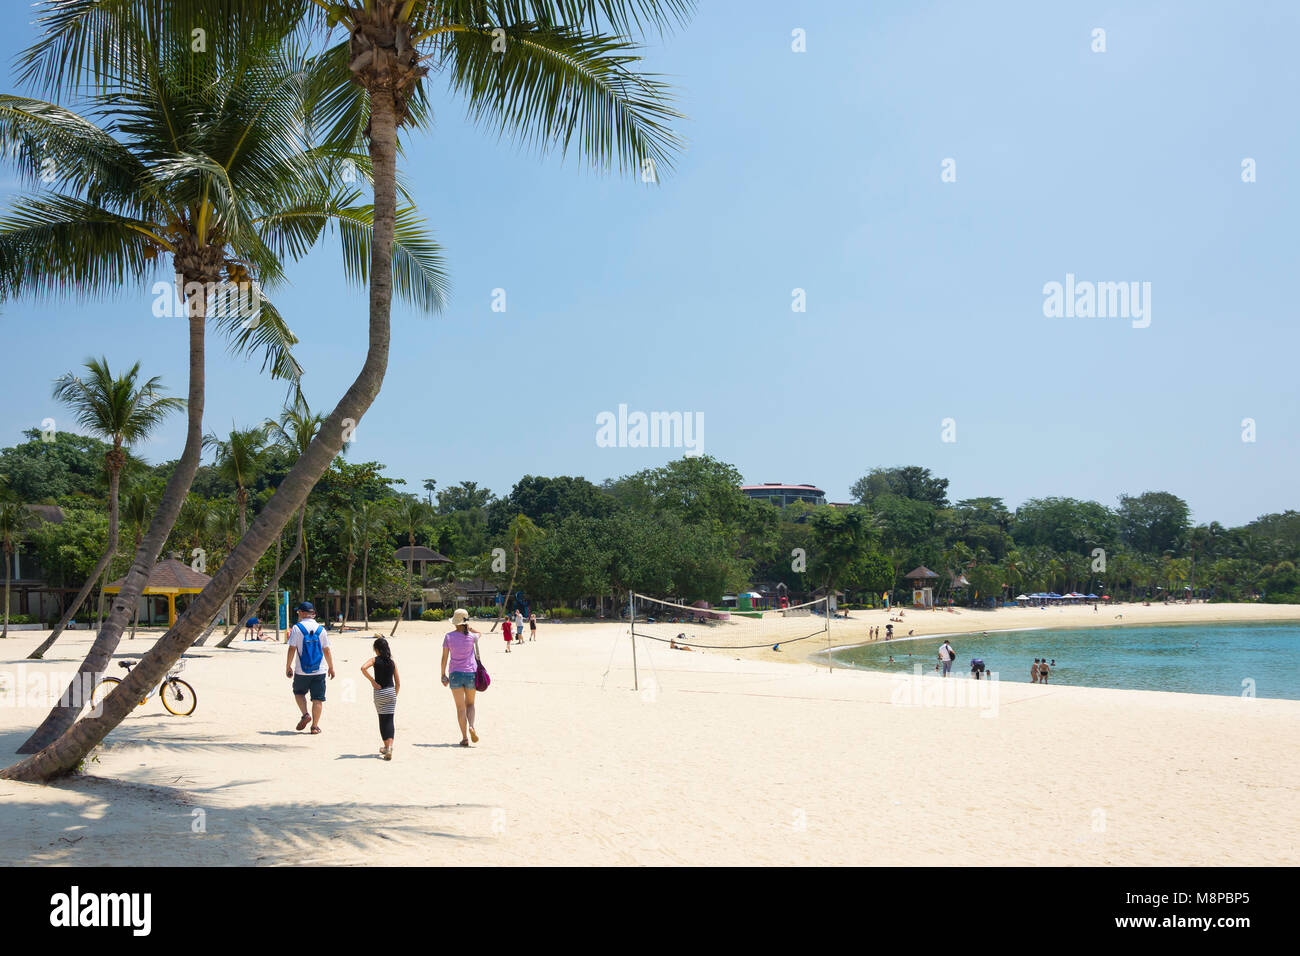 Palawan Beach, Insel Sentosa, Singapur Insel (Pulau Ujong), Singapur Stockfoto